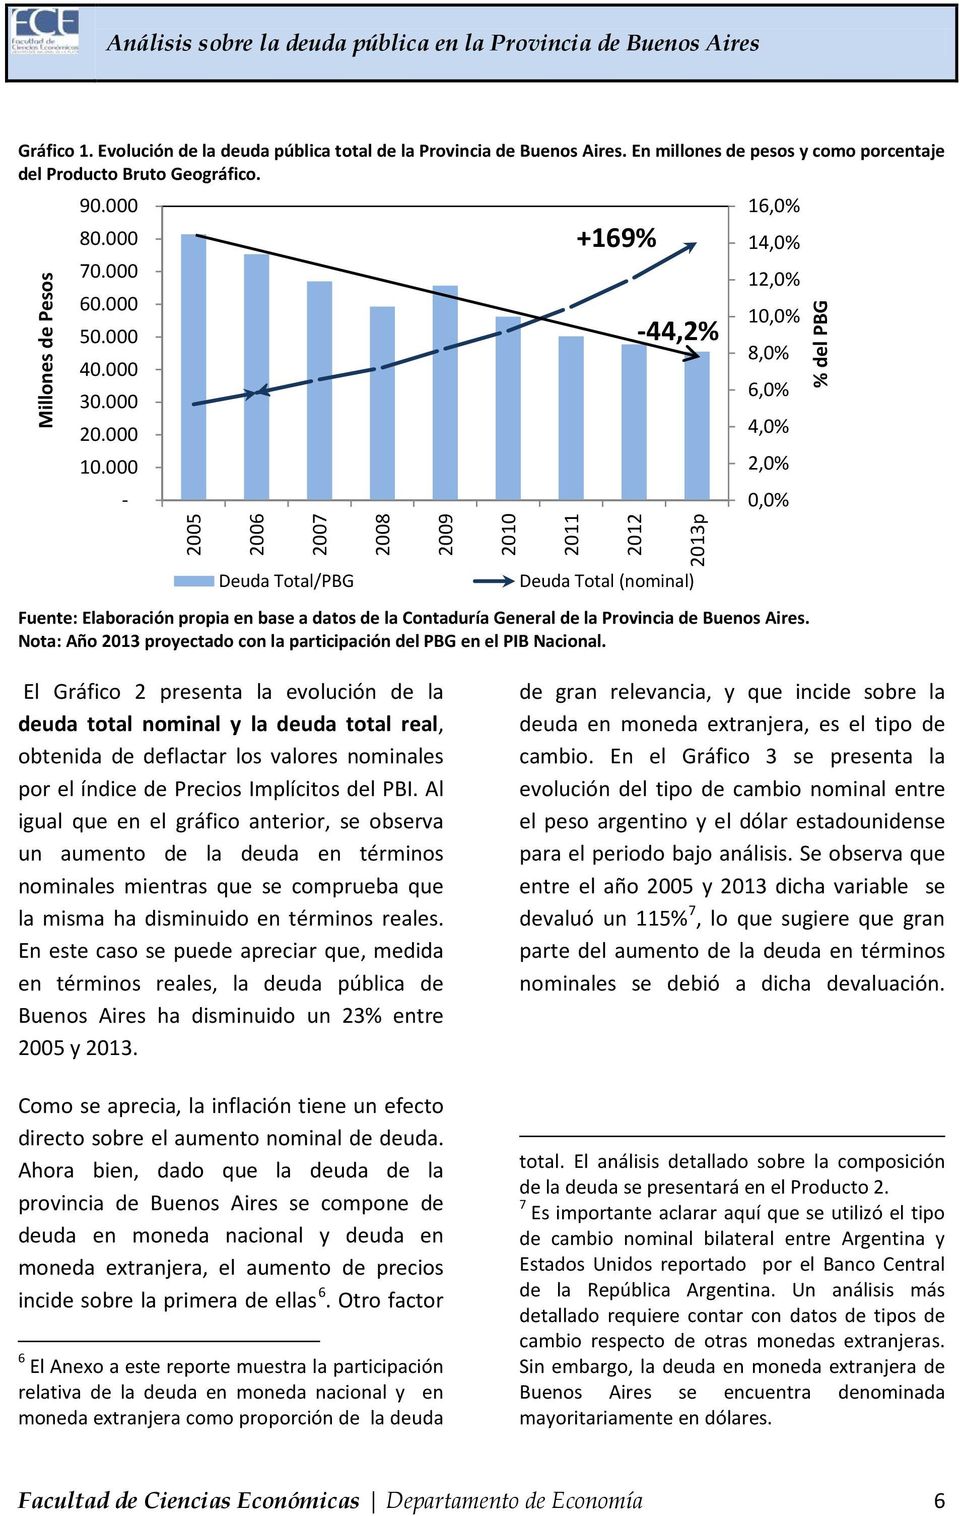 000-2005 2006 2007 Deuda Total/PBG 2008 16,0% 14,0% 12,0% 10,0% 8,0% 6,0% 4,0% 2,0% 0,0% Fuente: Elaboración propia en base a datos de la Contaduría General de la Provincia de Buenos Aires.